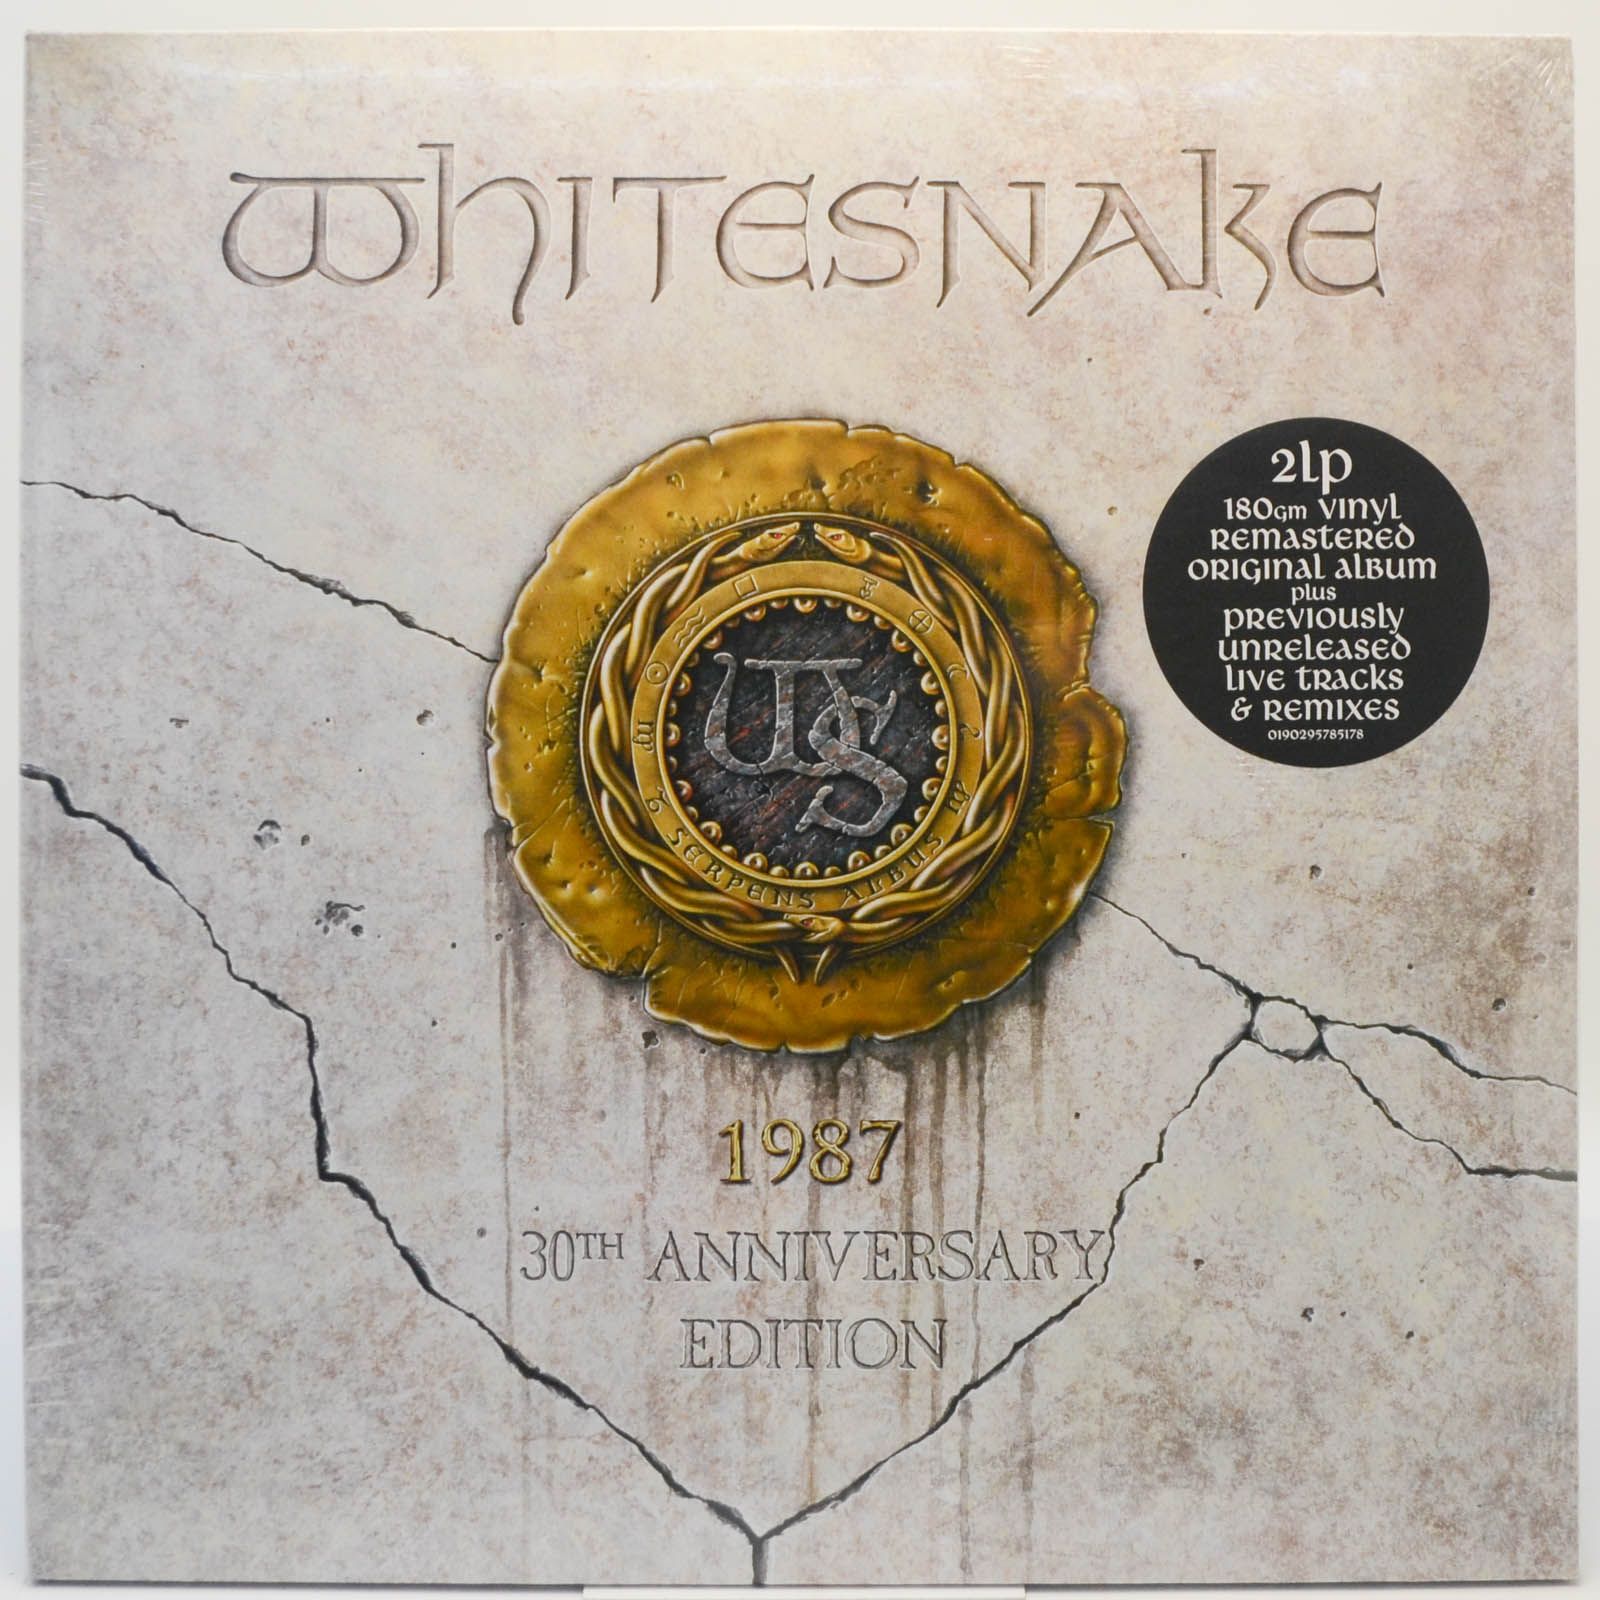 Whitesnake — 1987 (2LP), 1987